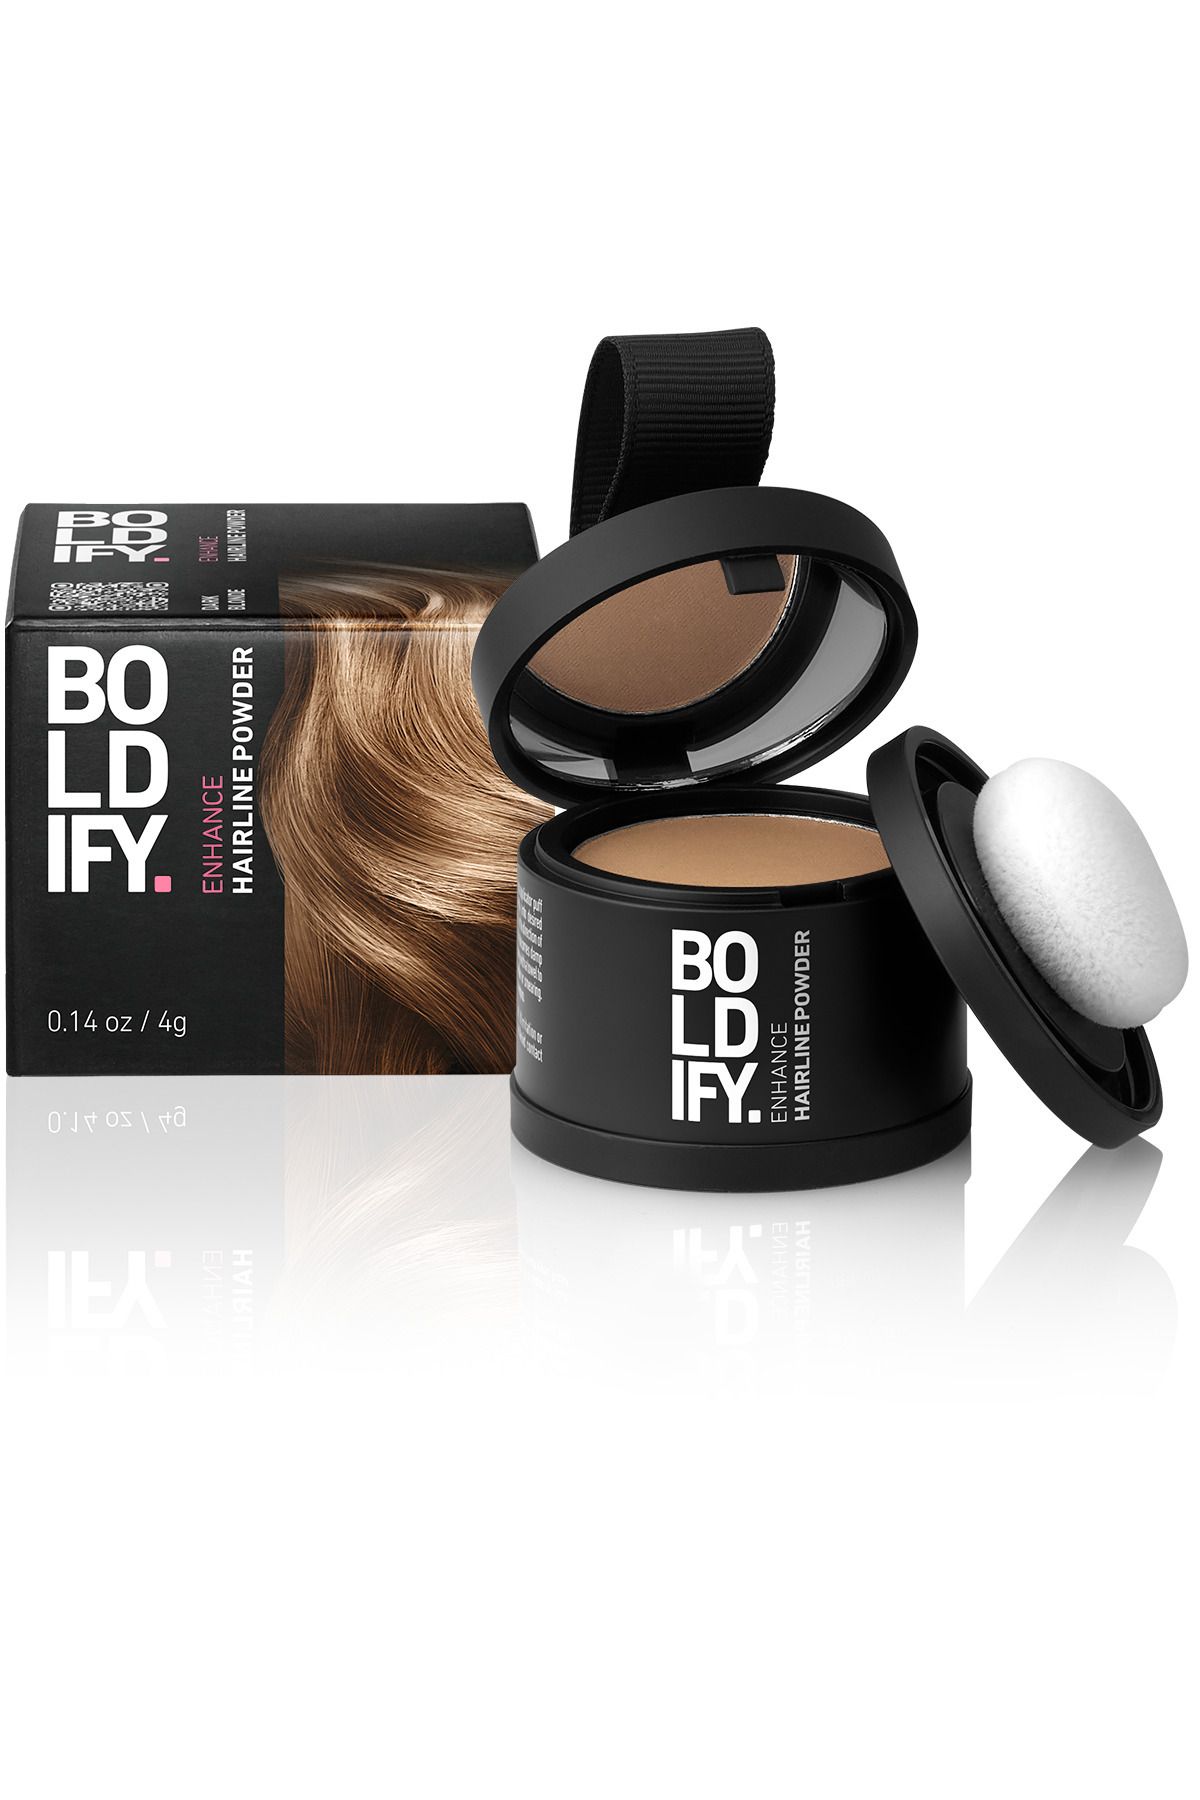 Boldify Saç Tozu KOYU SARI Dolgunlaştırıcı Topik Tozu, Gizler & 48 saat etkili